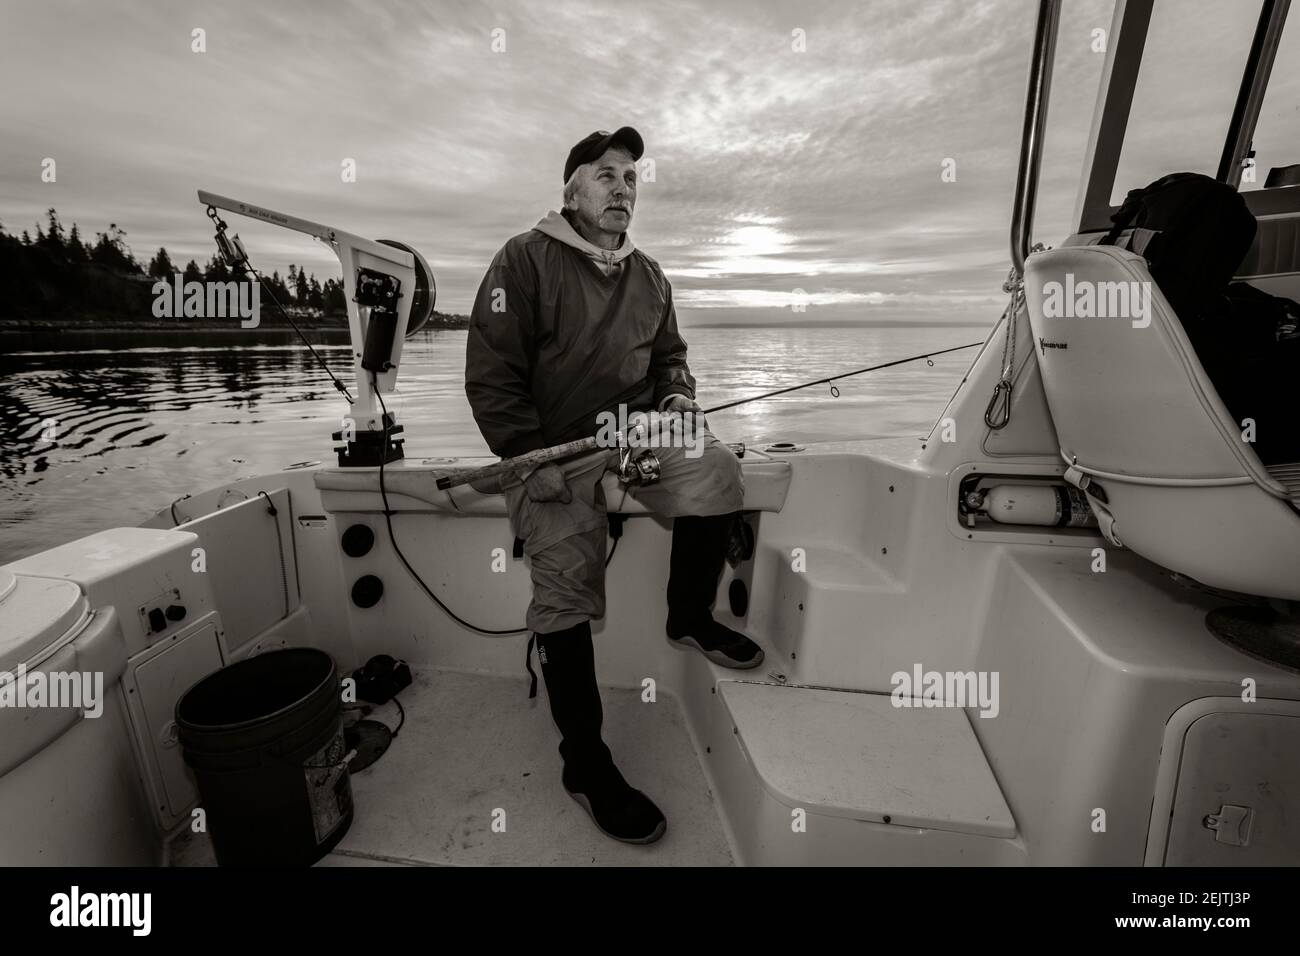 WA20086-00-BW WASHINGTON - Phil Russell nimmt einen Moment zum Entspannen, während Tintenfisch Angeln auf dem Puget Sound. Stockfoto